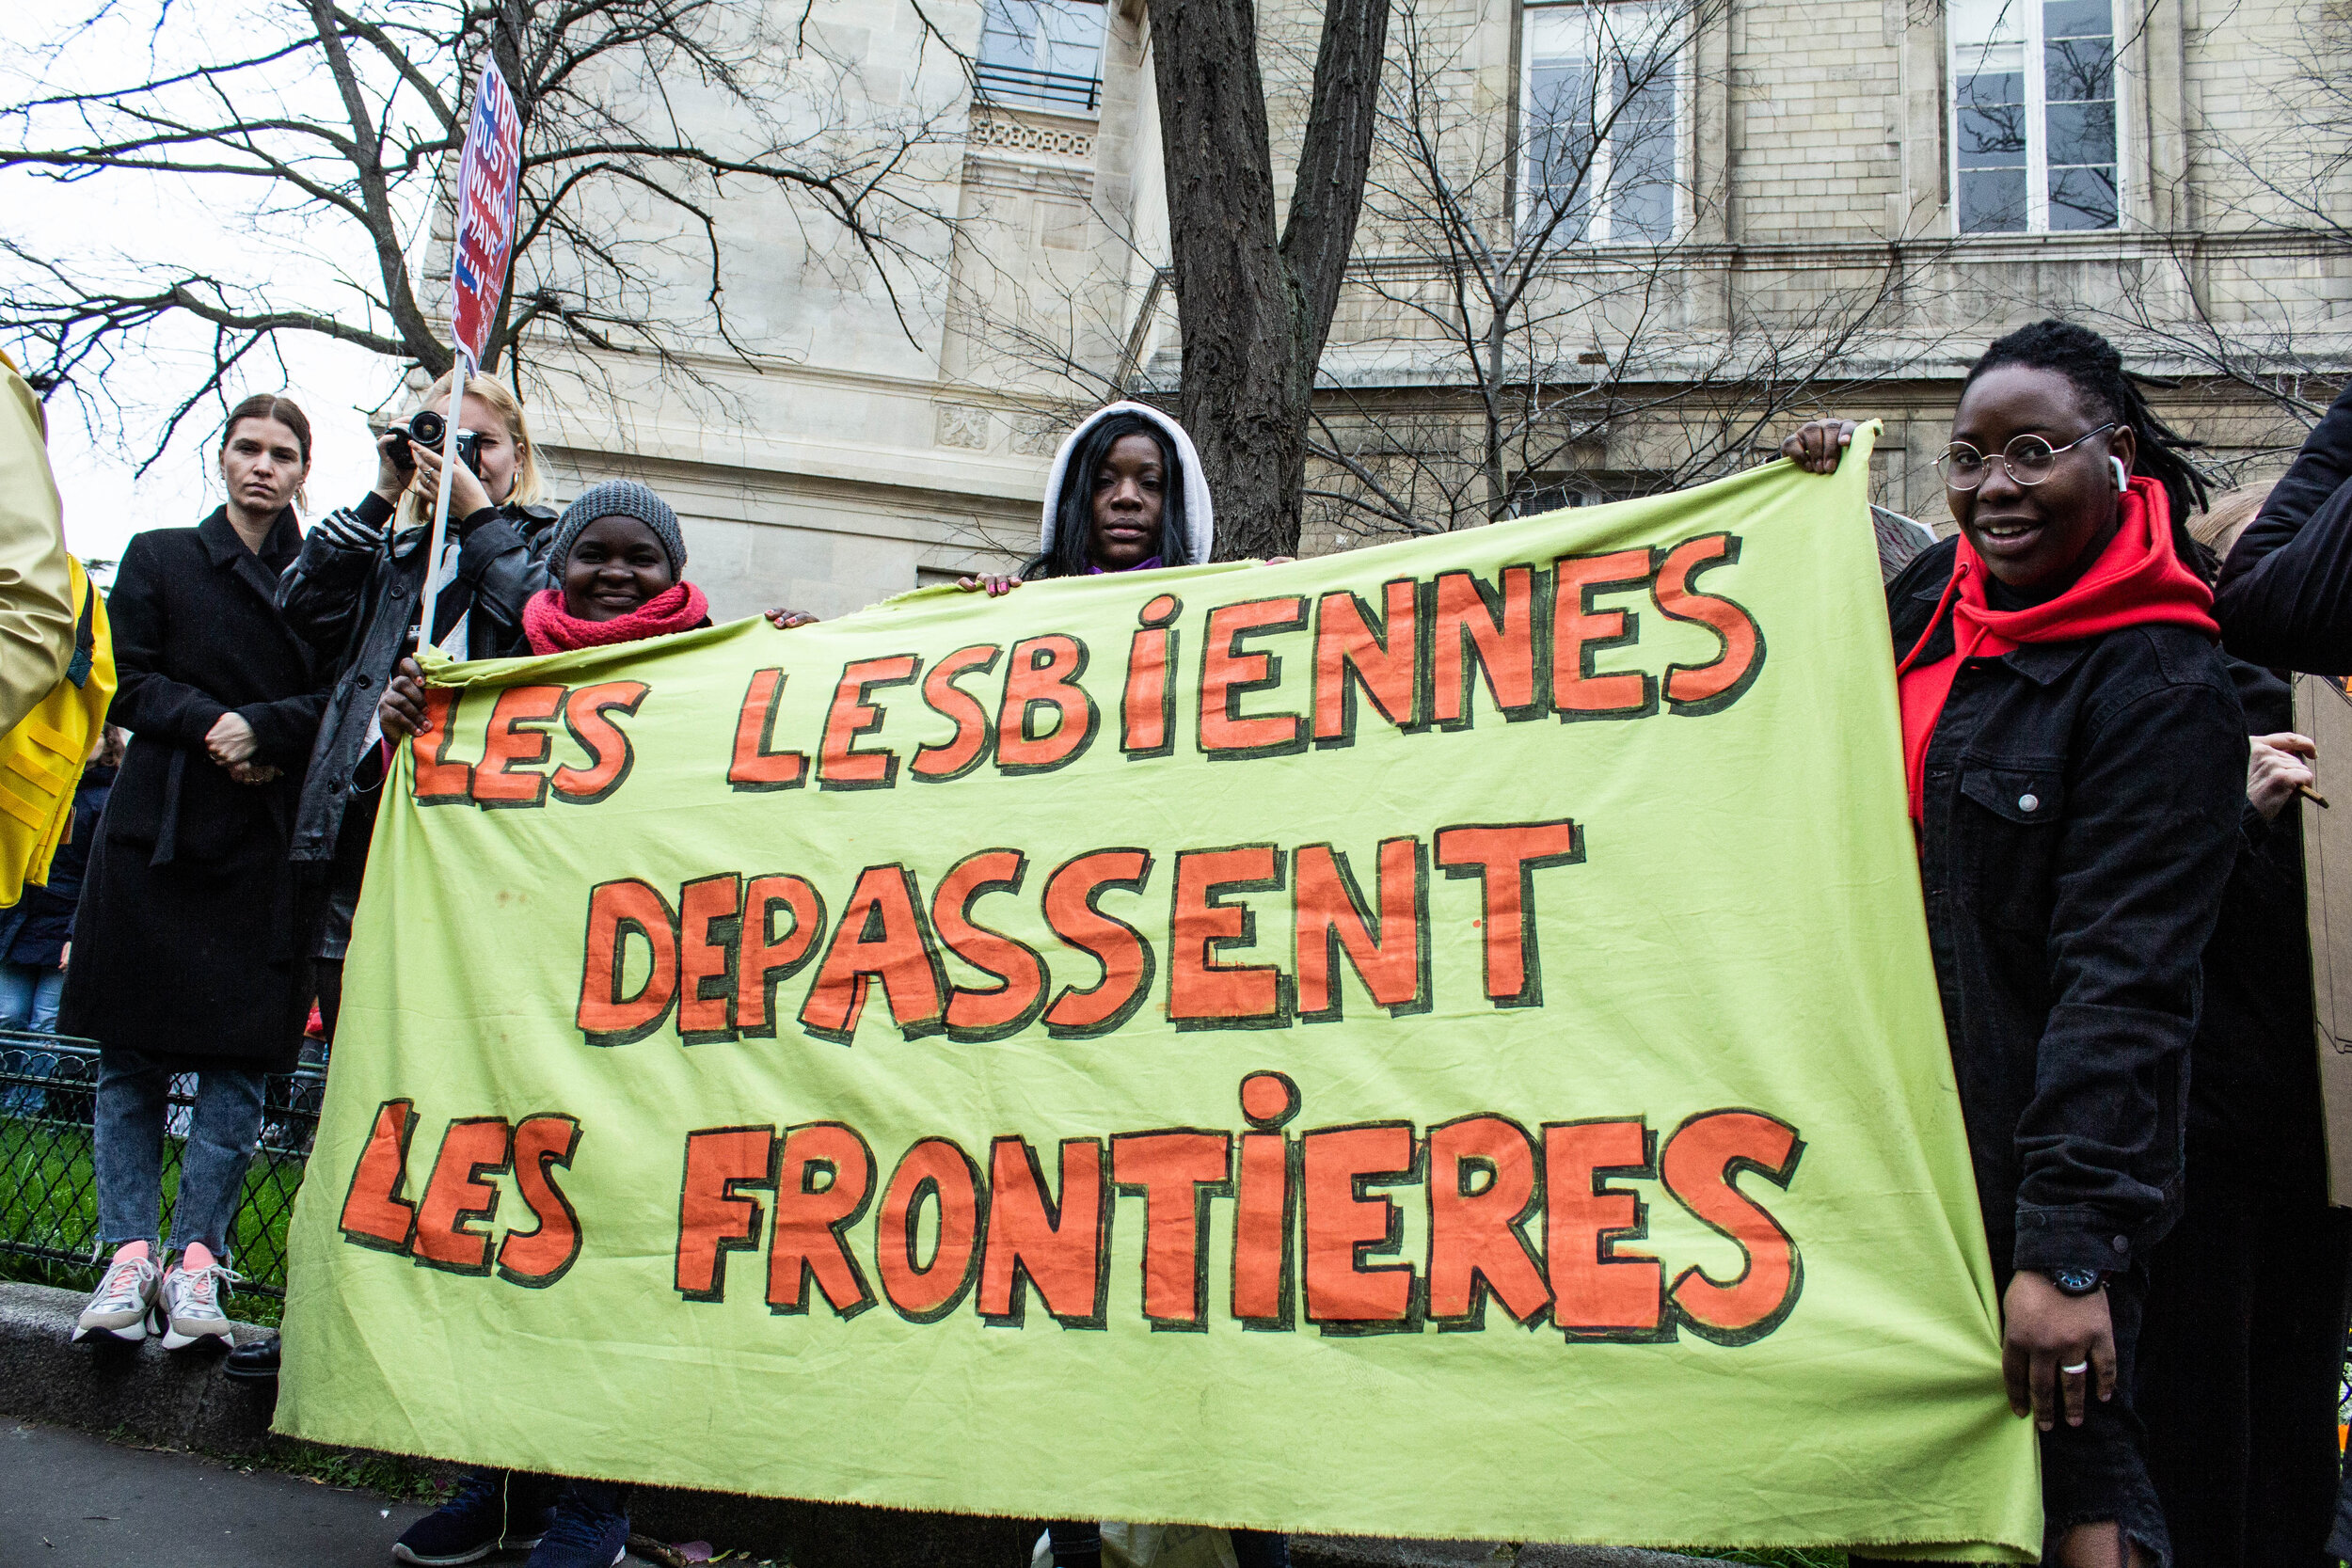   Trois manifestantes et leur banderole « Les lesbiennes dépassent les frontières » à la journée internationale des luttes pour les droits des femmes, Place d’Italie.  ©Krioula 